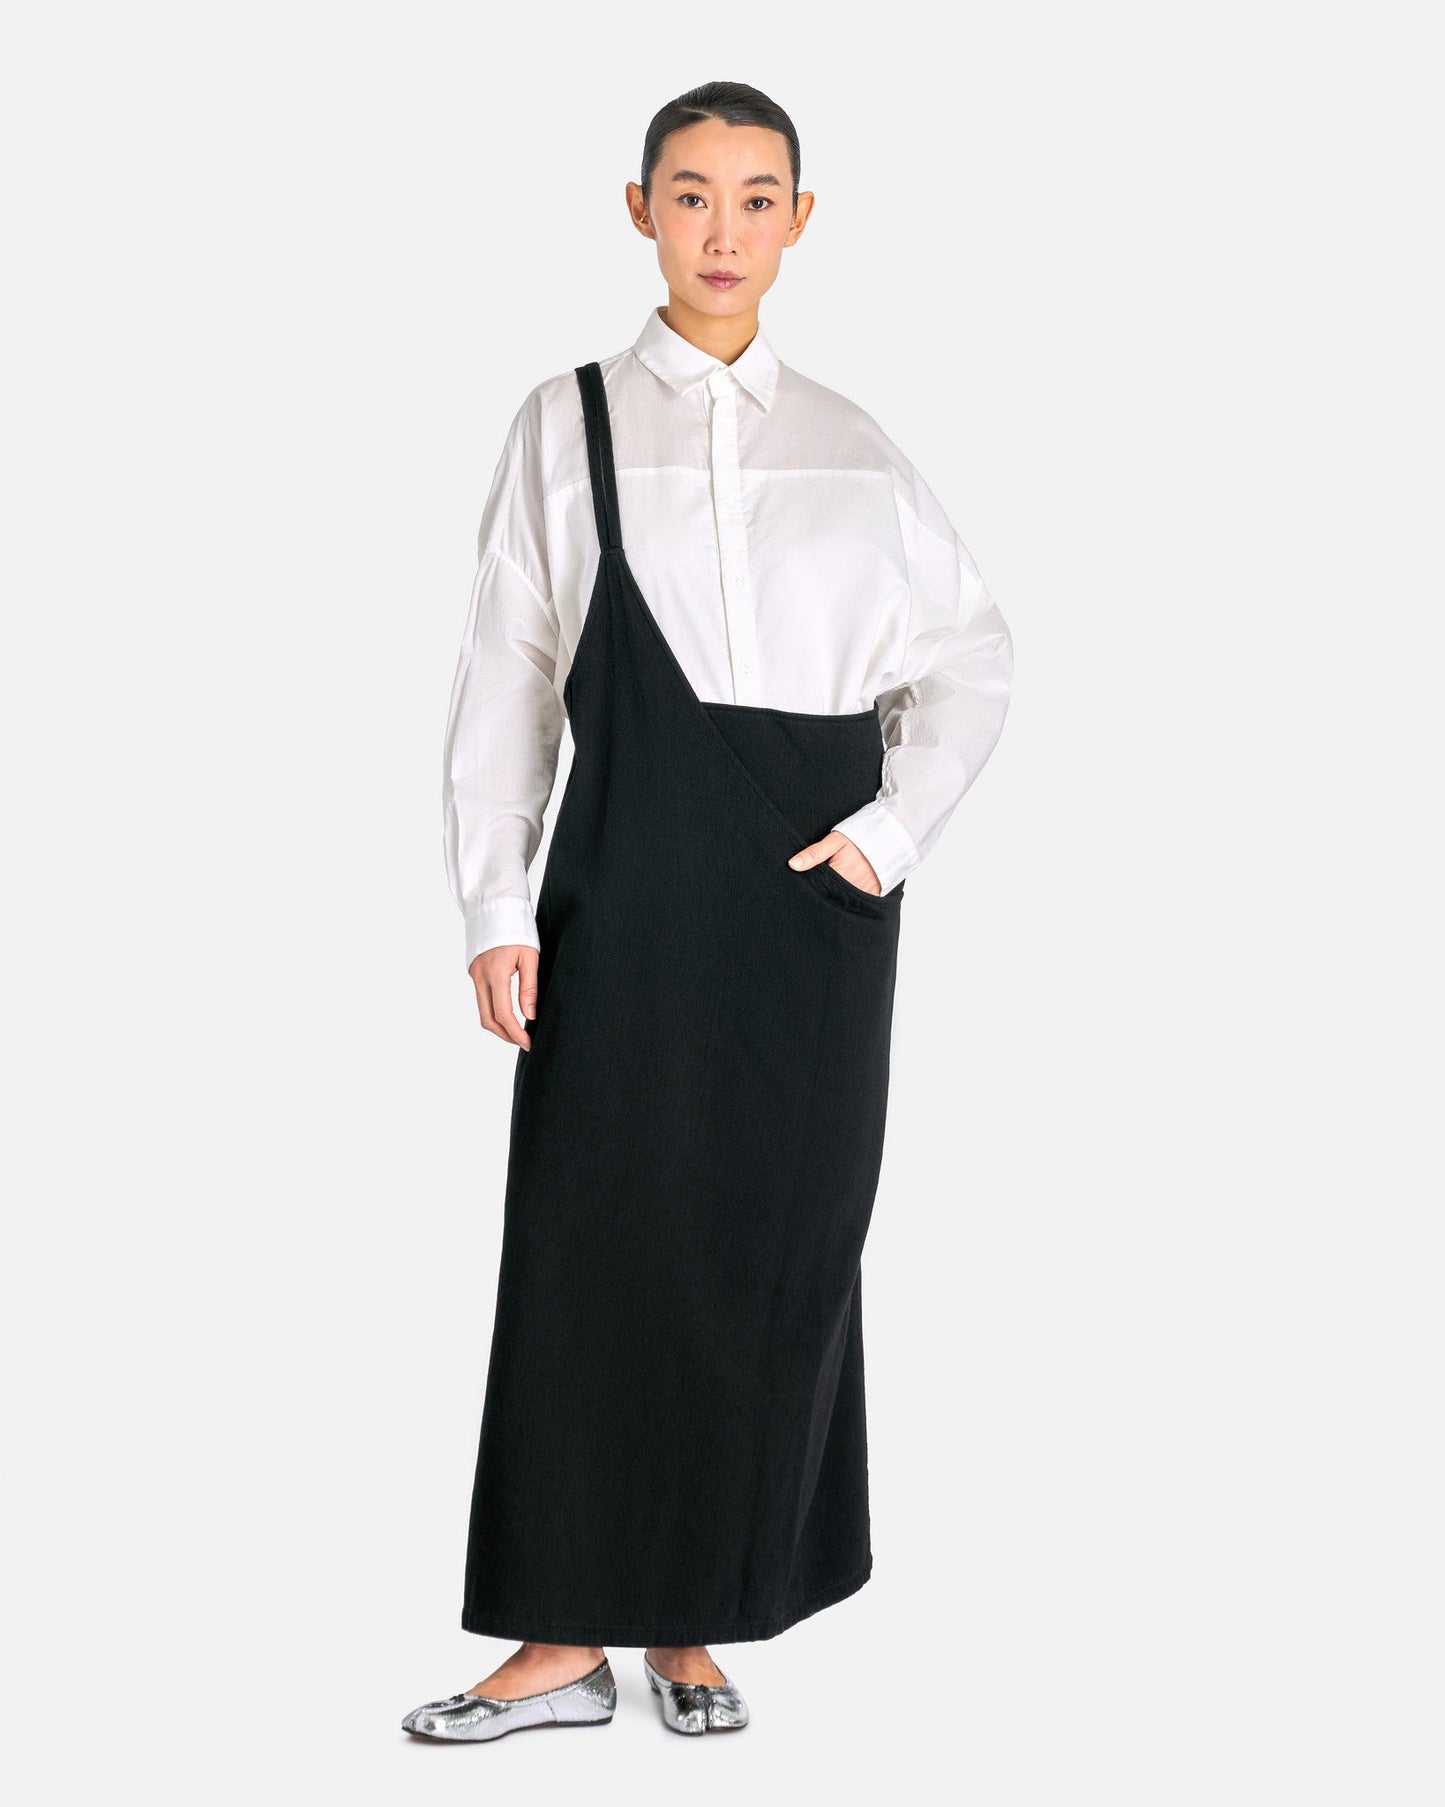 Y's by Yohji Yamamoto Women Dresses 02 E-Asymmetry Jumper Dress in Black